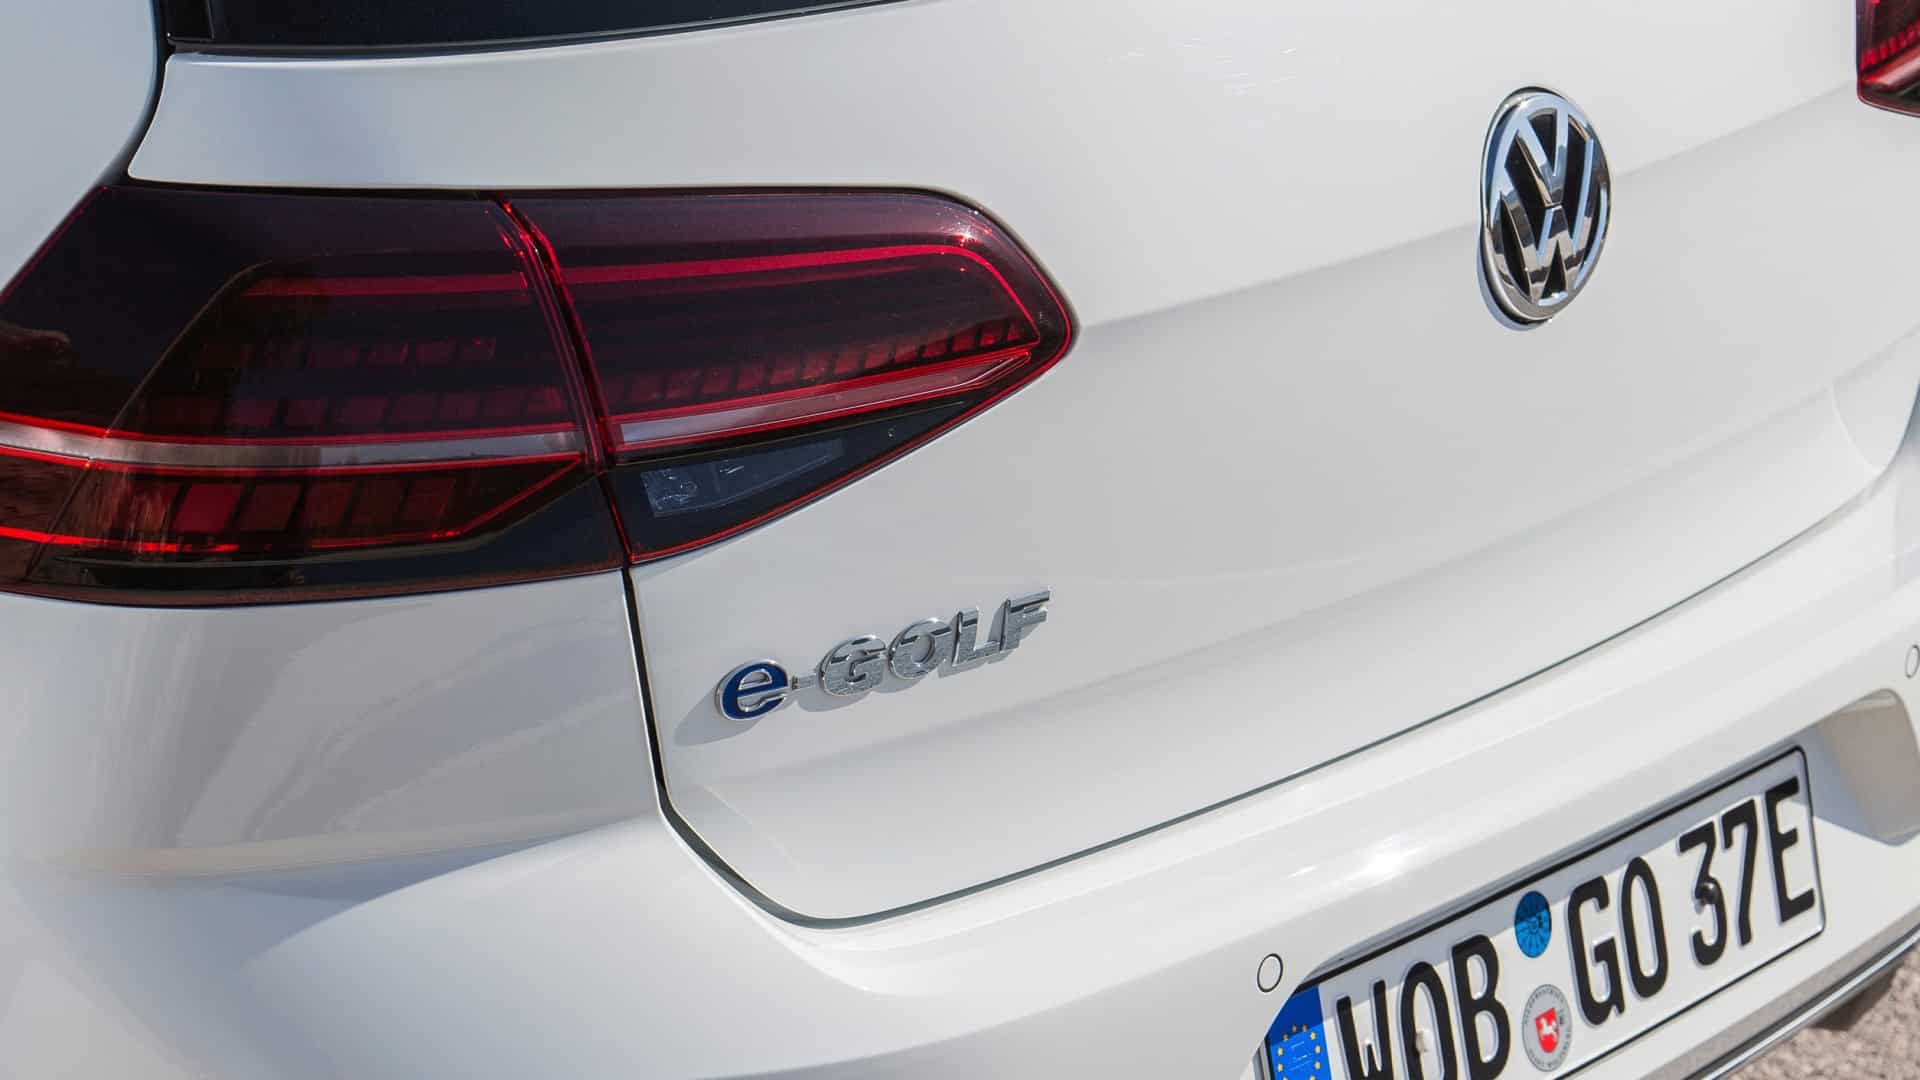 Volkswagen : la future Golf électrique pousse l’ID.3 vers la sortie